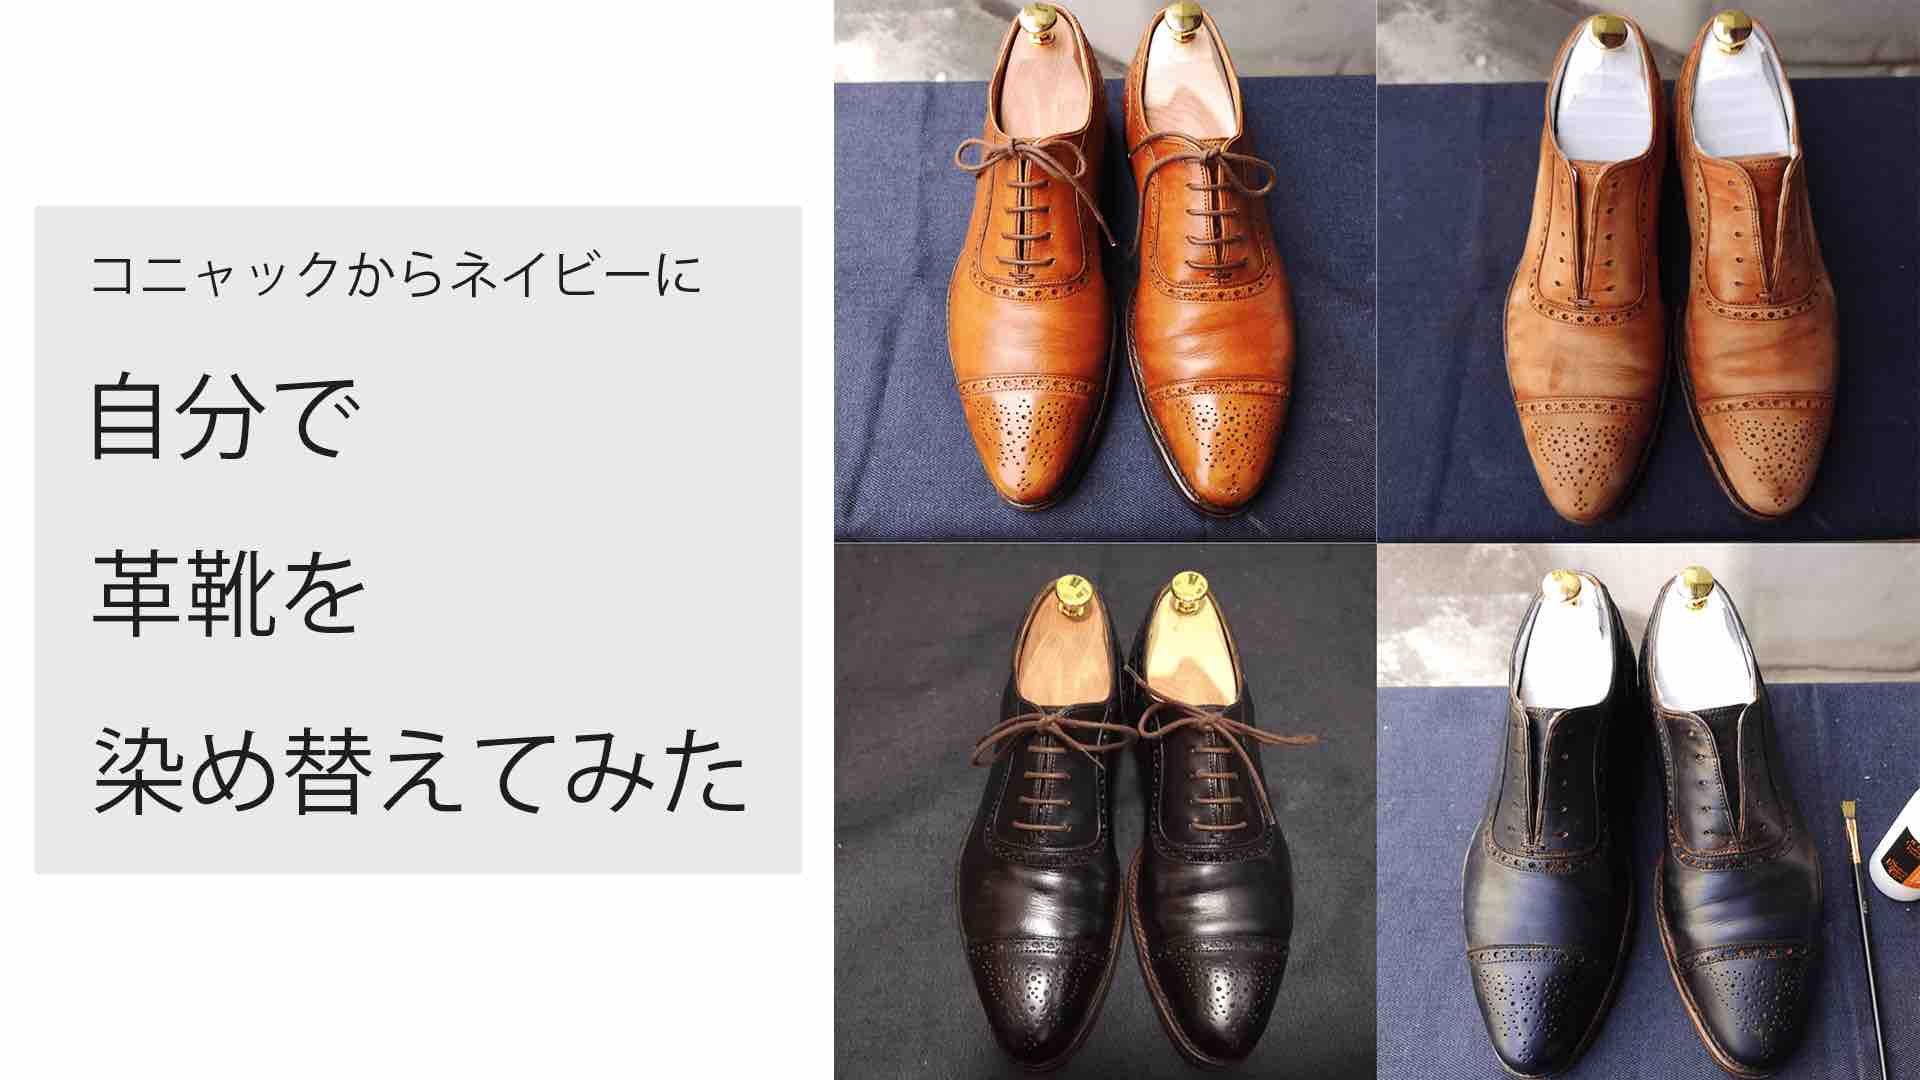 染め直し リカラー パティーヌ 自分で革靴を染め替えてみた Kutsumedia クツメディア 革靴と靴磨きのブログメディア